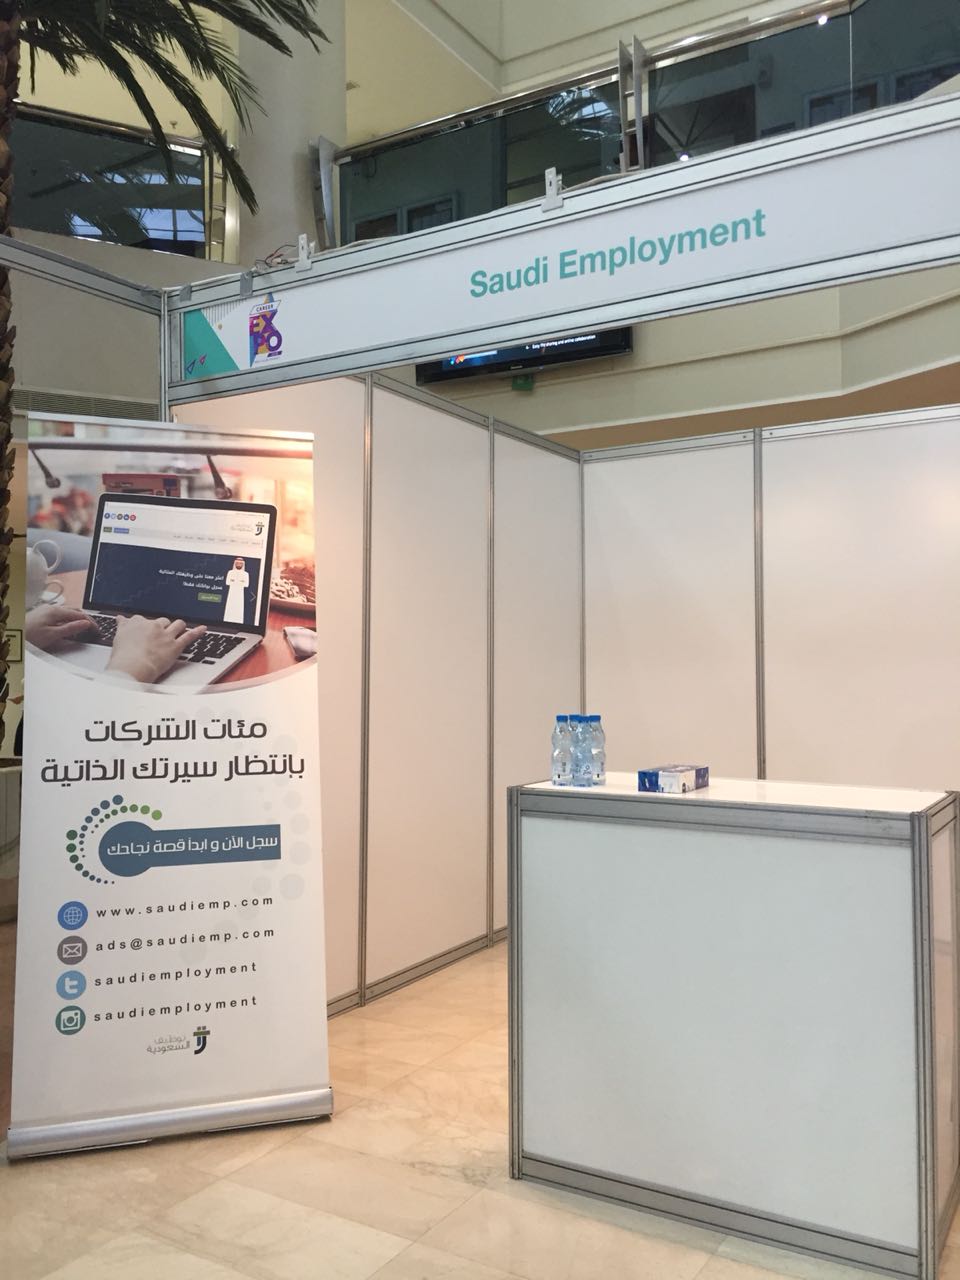 توظيف السعودية يشارك في معرض المهنة السنوي بجامعة الأمير سلطان